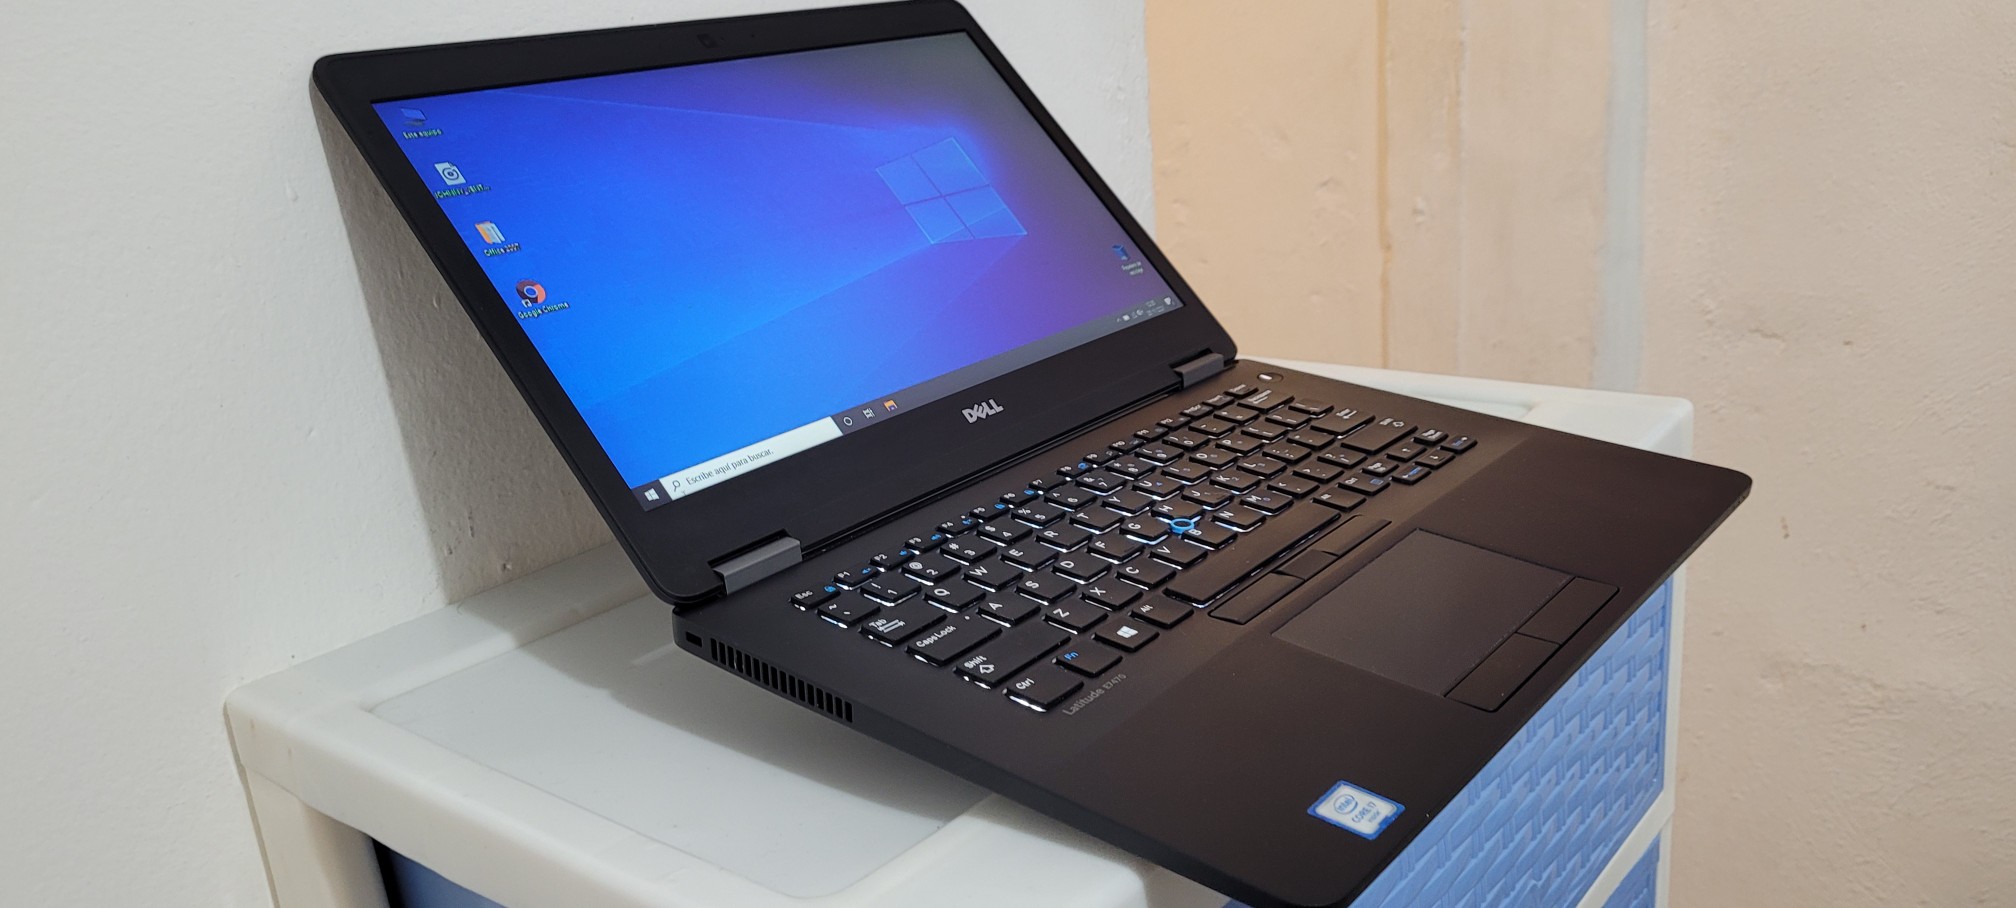 computadoras y laptops - Dell 7470 14 Pulg Core i5 7ma Gen Ram 8gb ddr4 Disco 128gb SSD Full 1080p 1